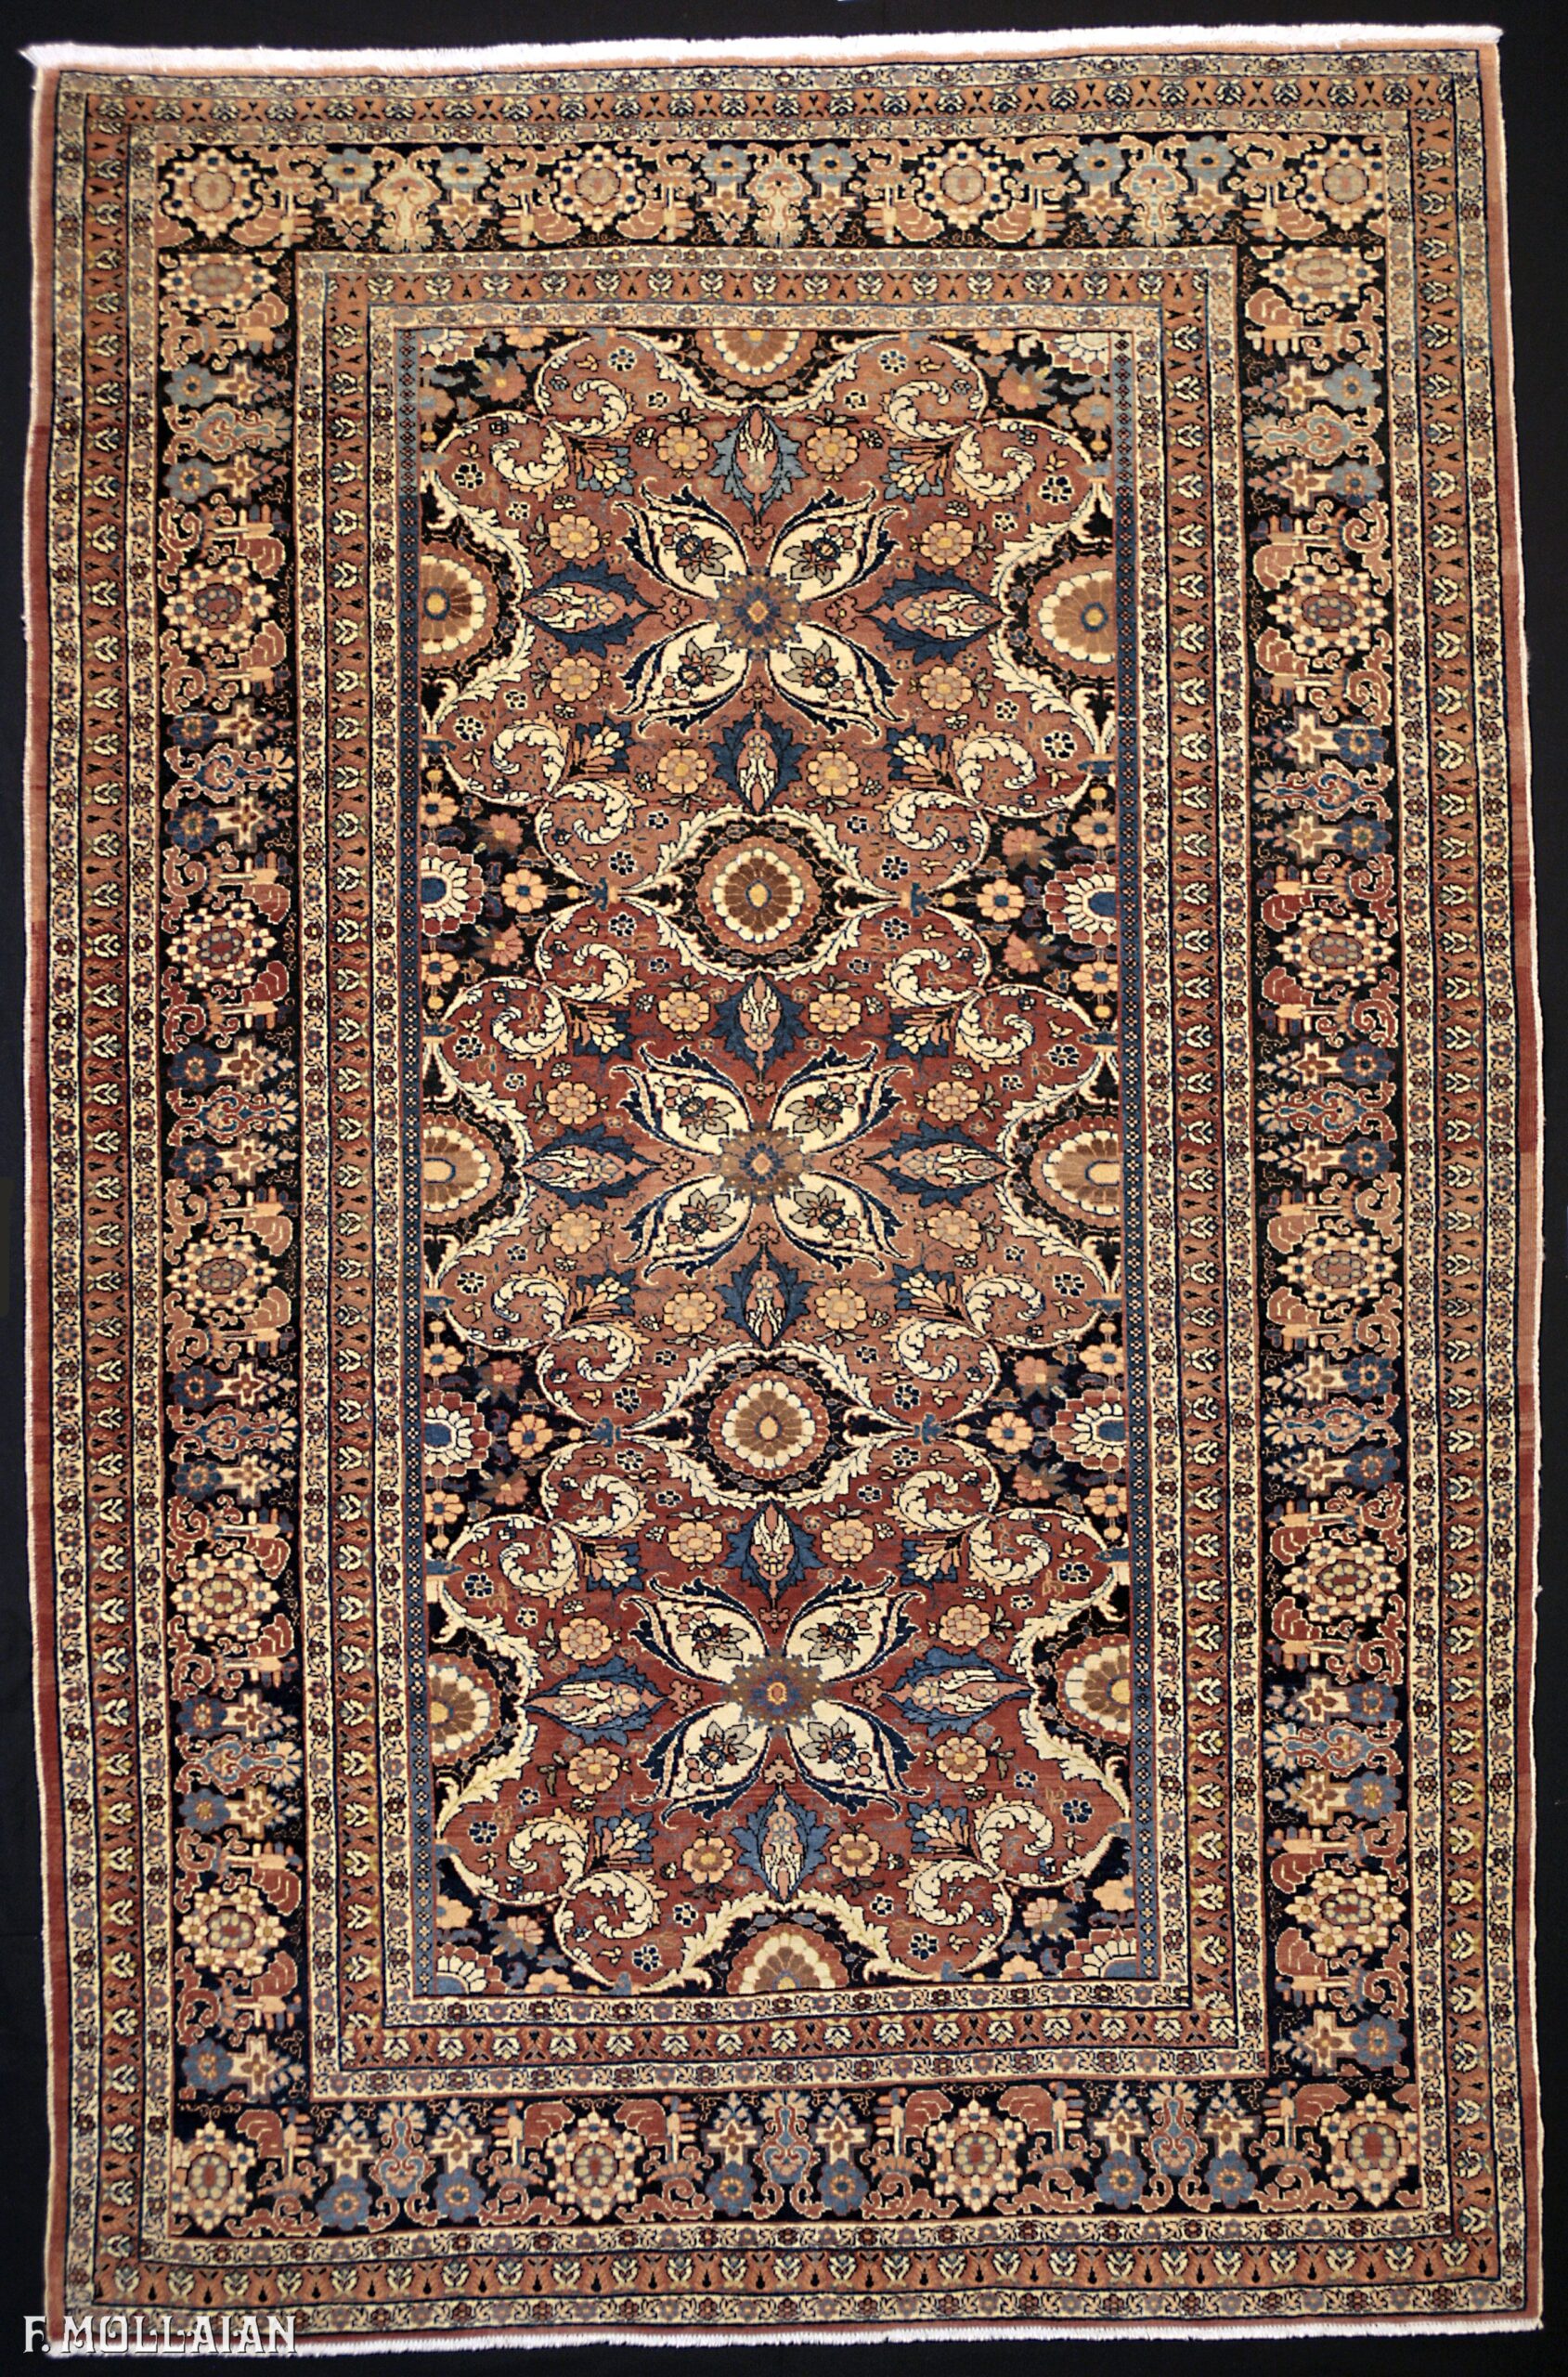 Antique Persian Tabriz Hadji Djalili Rug n°:74457243